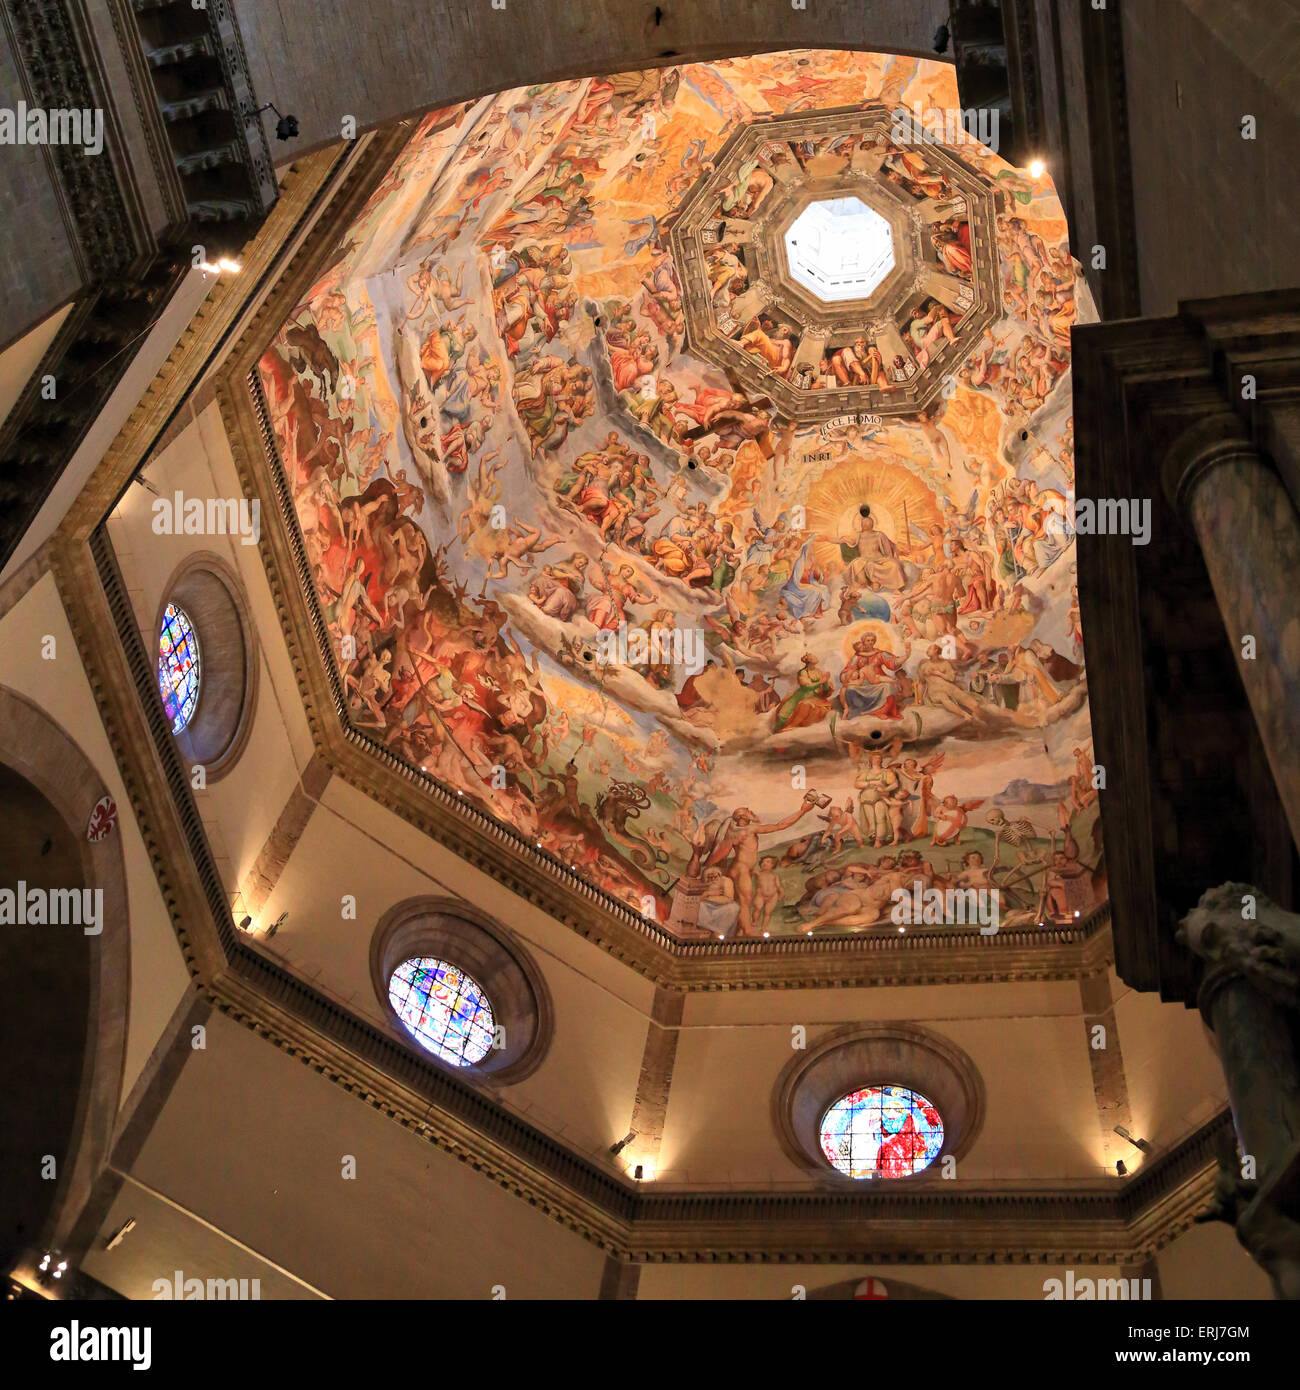 Kuppelfresko von Giorgio Vasari und Federico Zuccari. Kathedrale Santa Maria del Fiore, Florenz / Duomo di Firenzano. Die Kuppelfresken Dom von Florenz Stockfoto